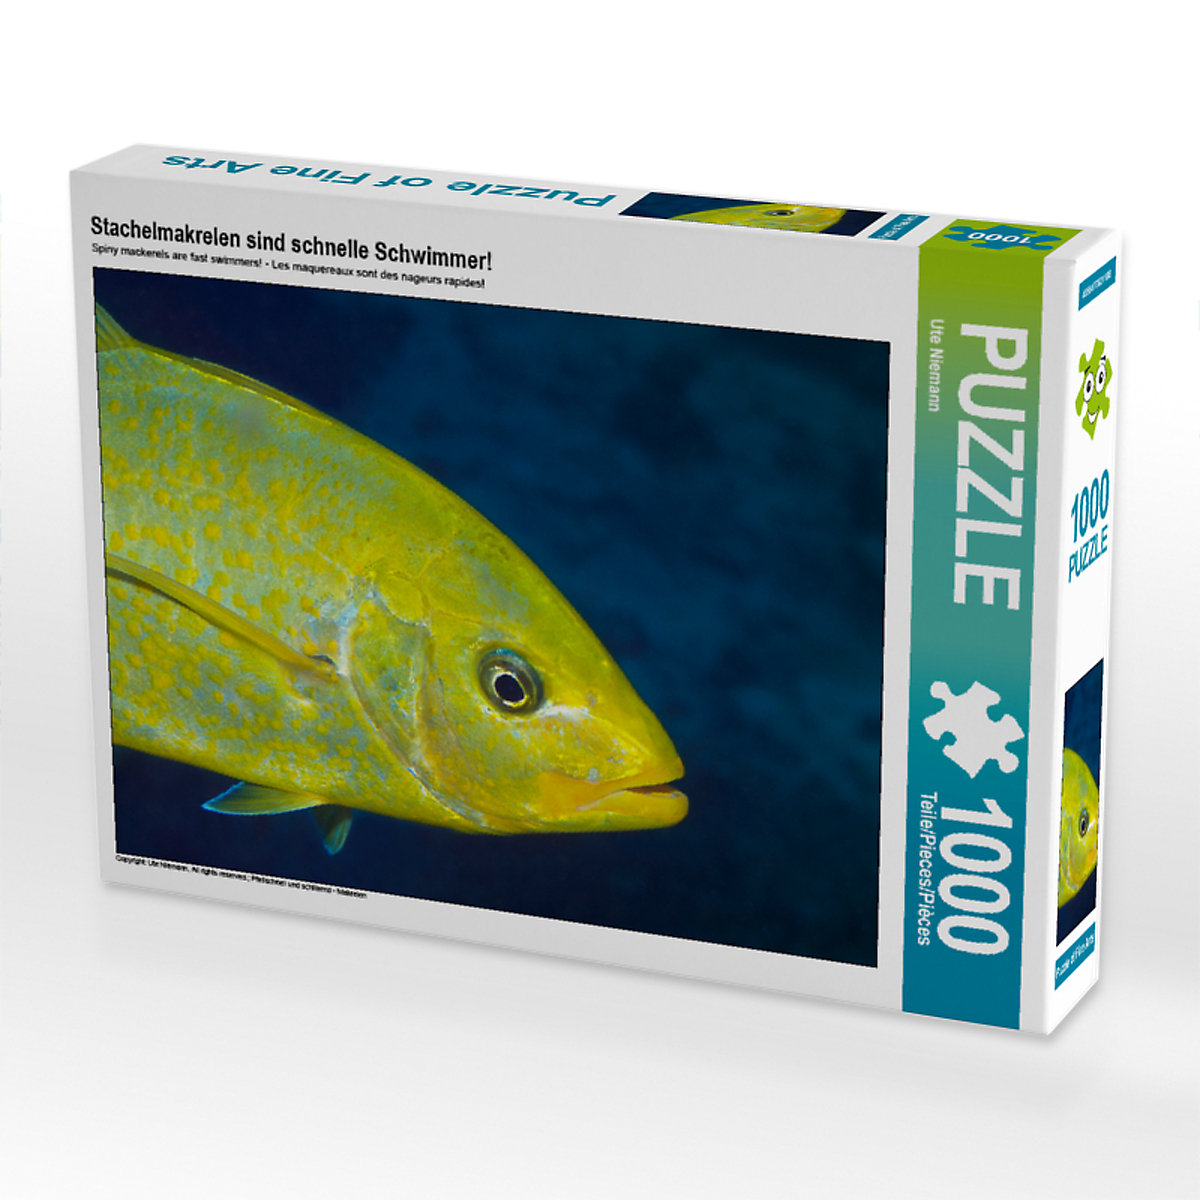 CALVENDO® Puzzle CALVENDO Puzzle Stachelmakrelen sind schnelle Schwimmer! 1000 Teile Foto-Puzzle für glückliche Stunden